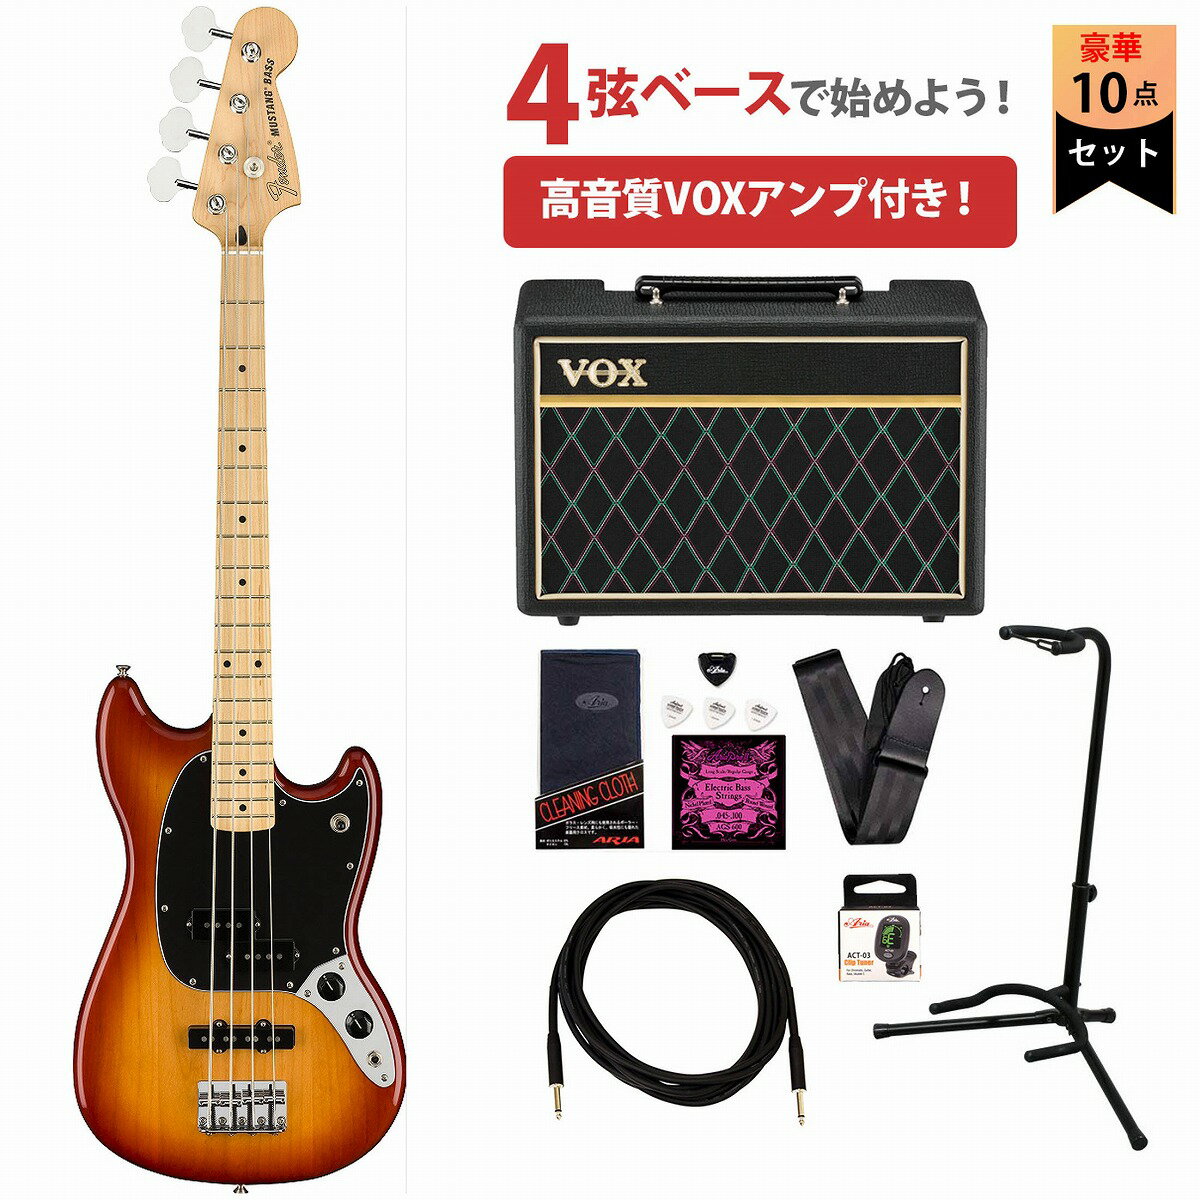 Fender / Player Mustang Bass PJ Maple Fingerboard Sienna Sunburst フェンダーVOXアンプ付属エレキベース初心者セット【YRK】